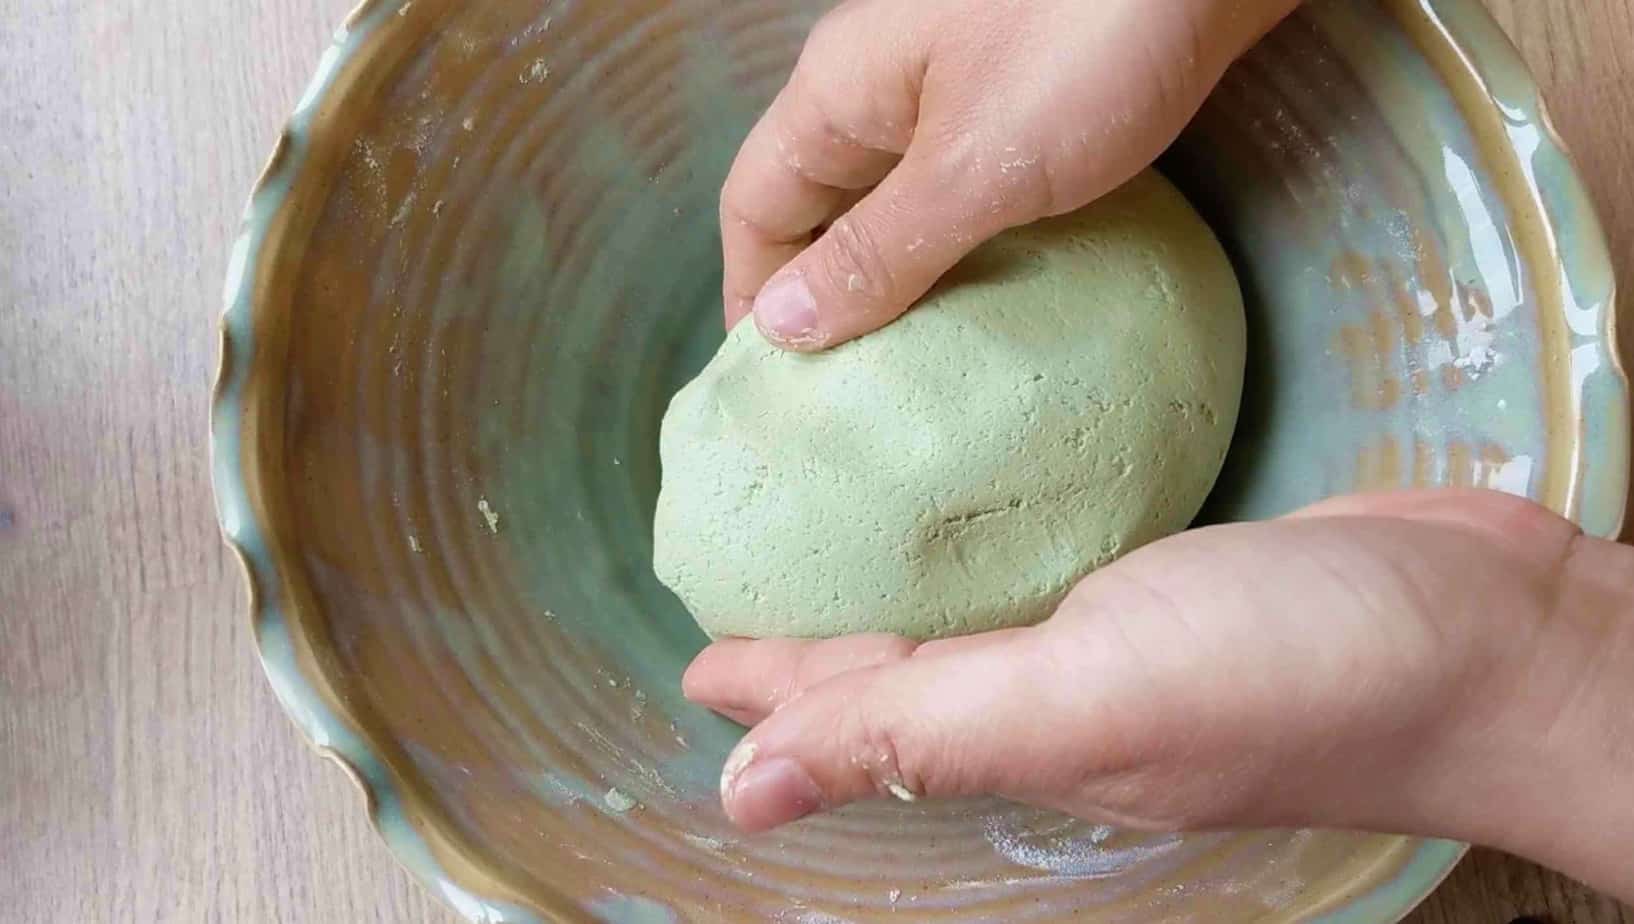 A piece of green dough